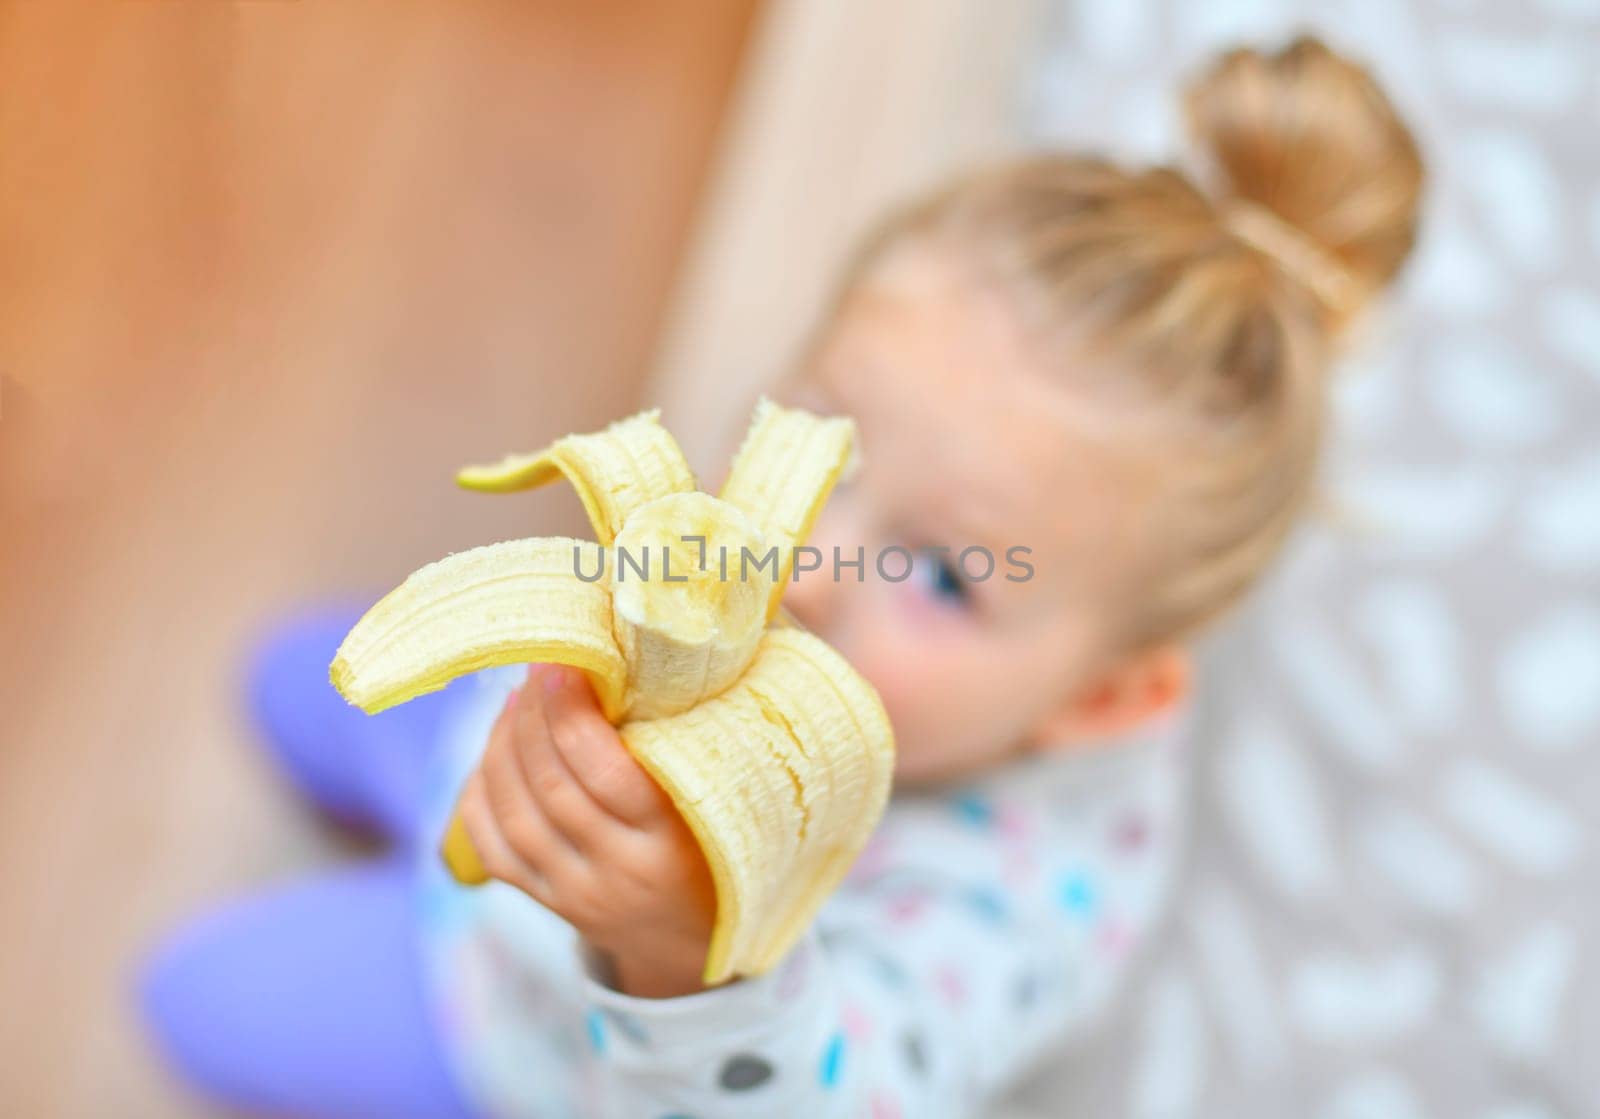 Girl holds banana in her hands